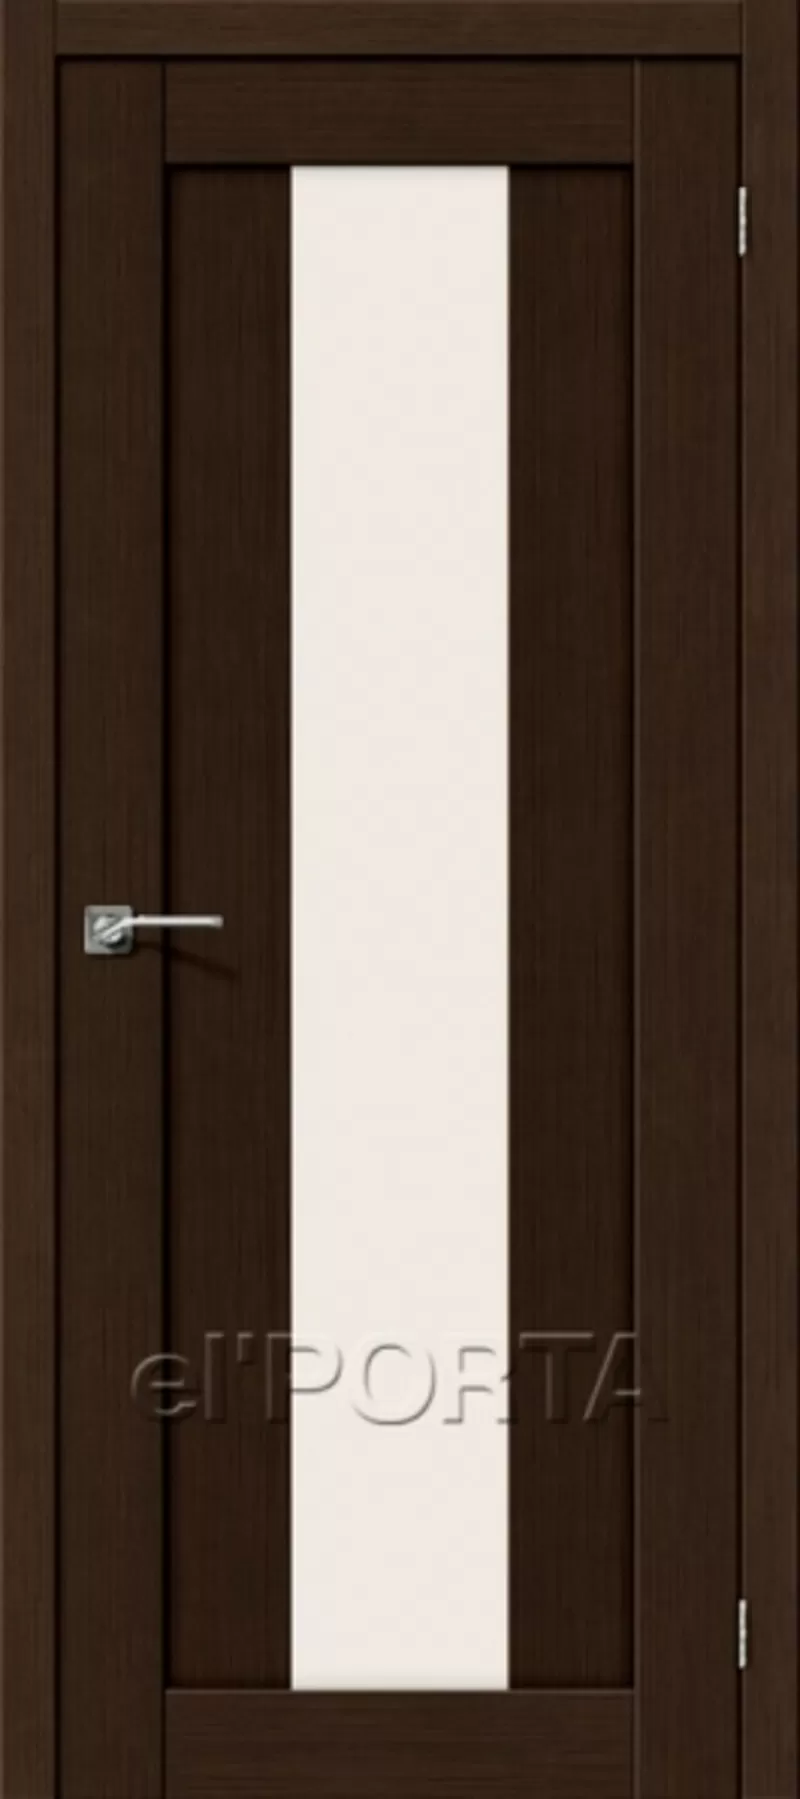 Межкомнатные двери МДФ недорого от 90 руб. комплект. Ручки в подарок! 3